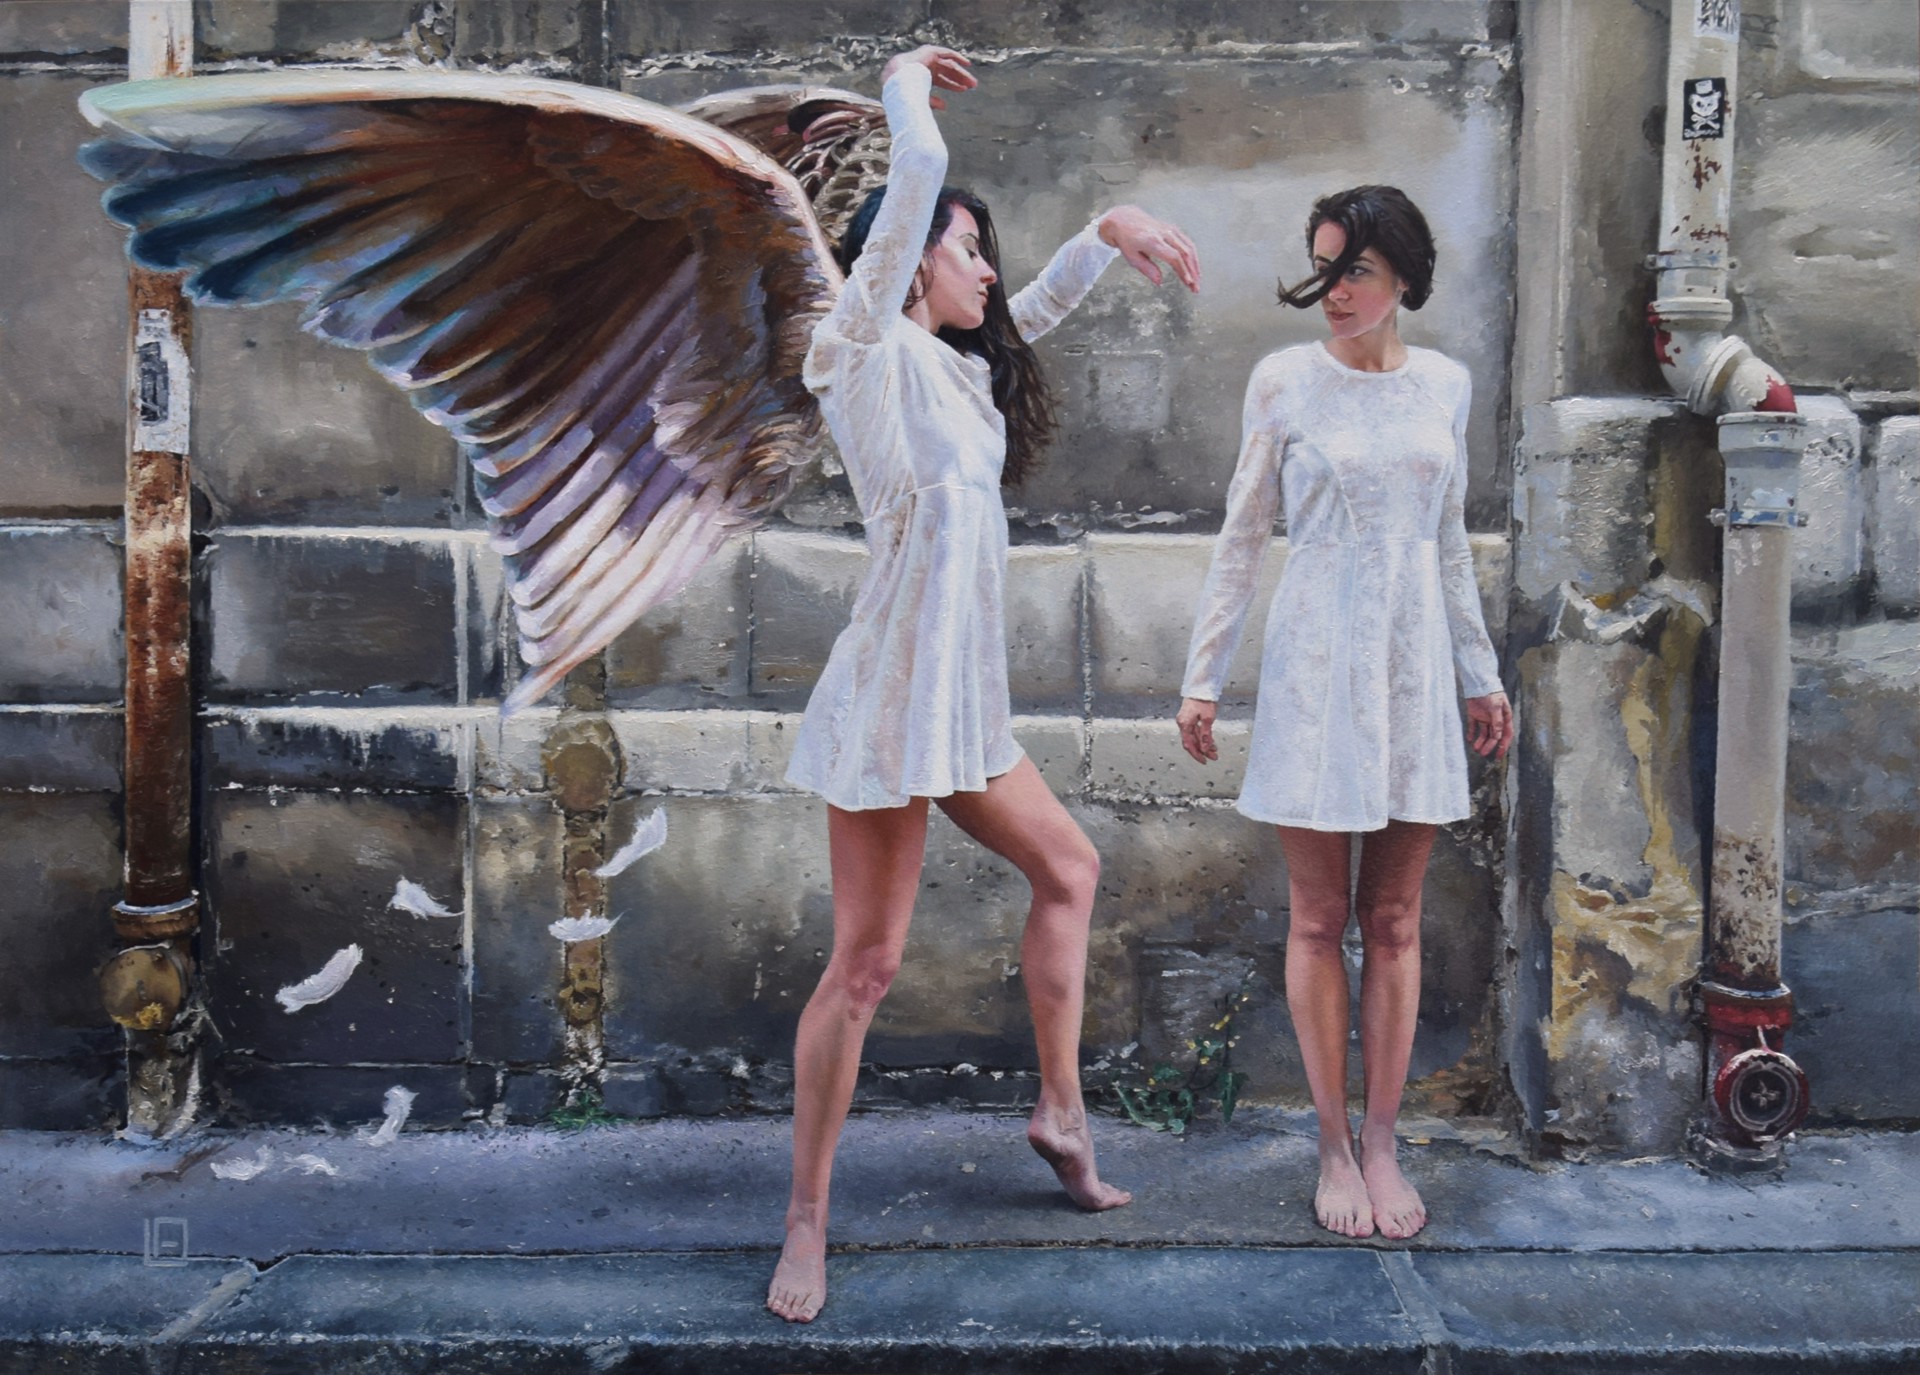 Find Your Wings by Linda Delahaye